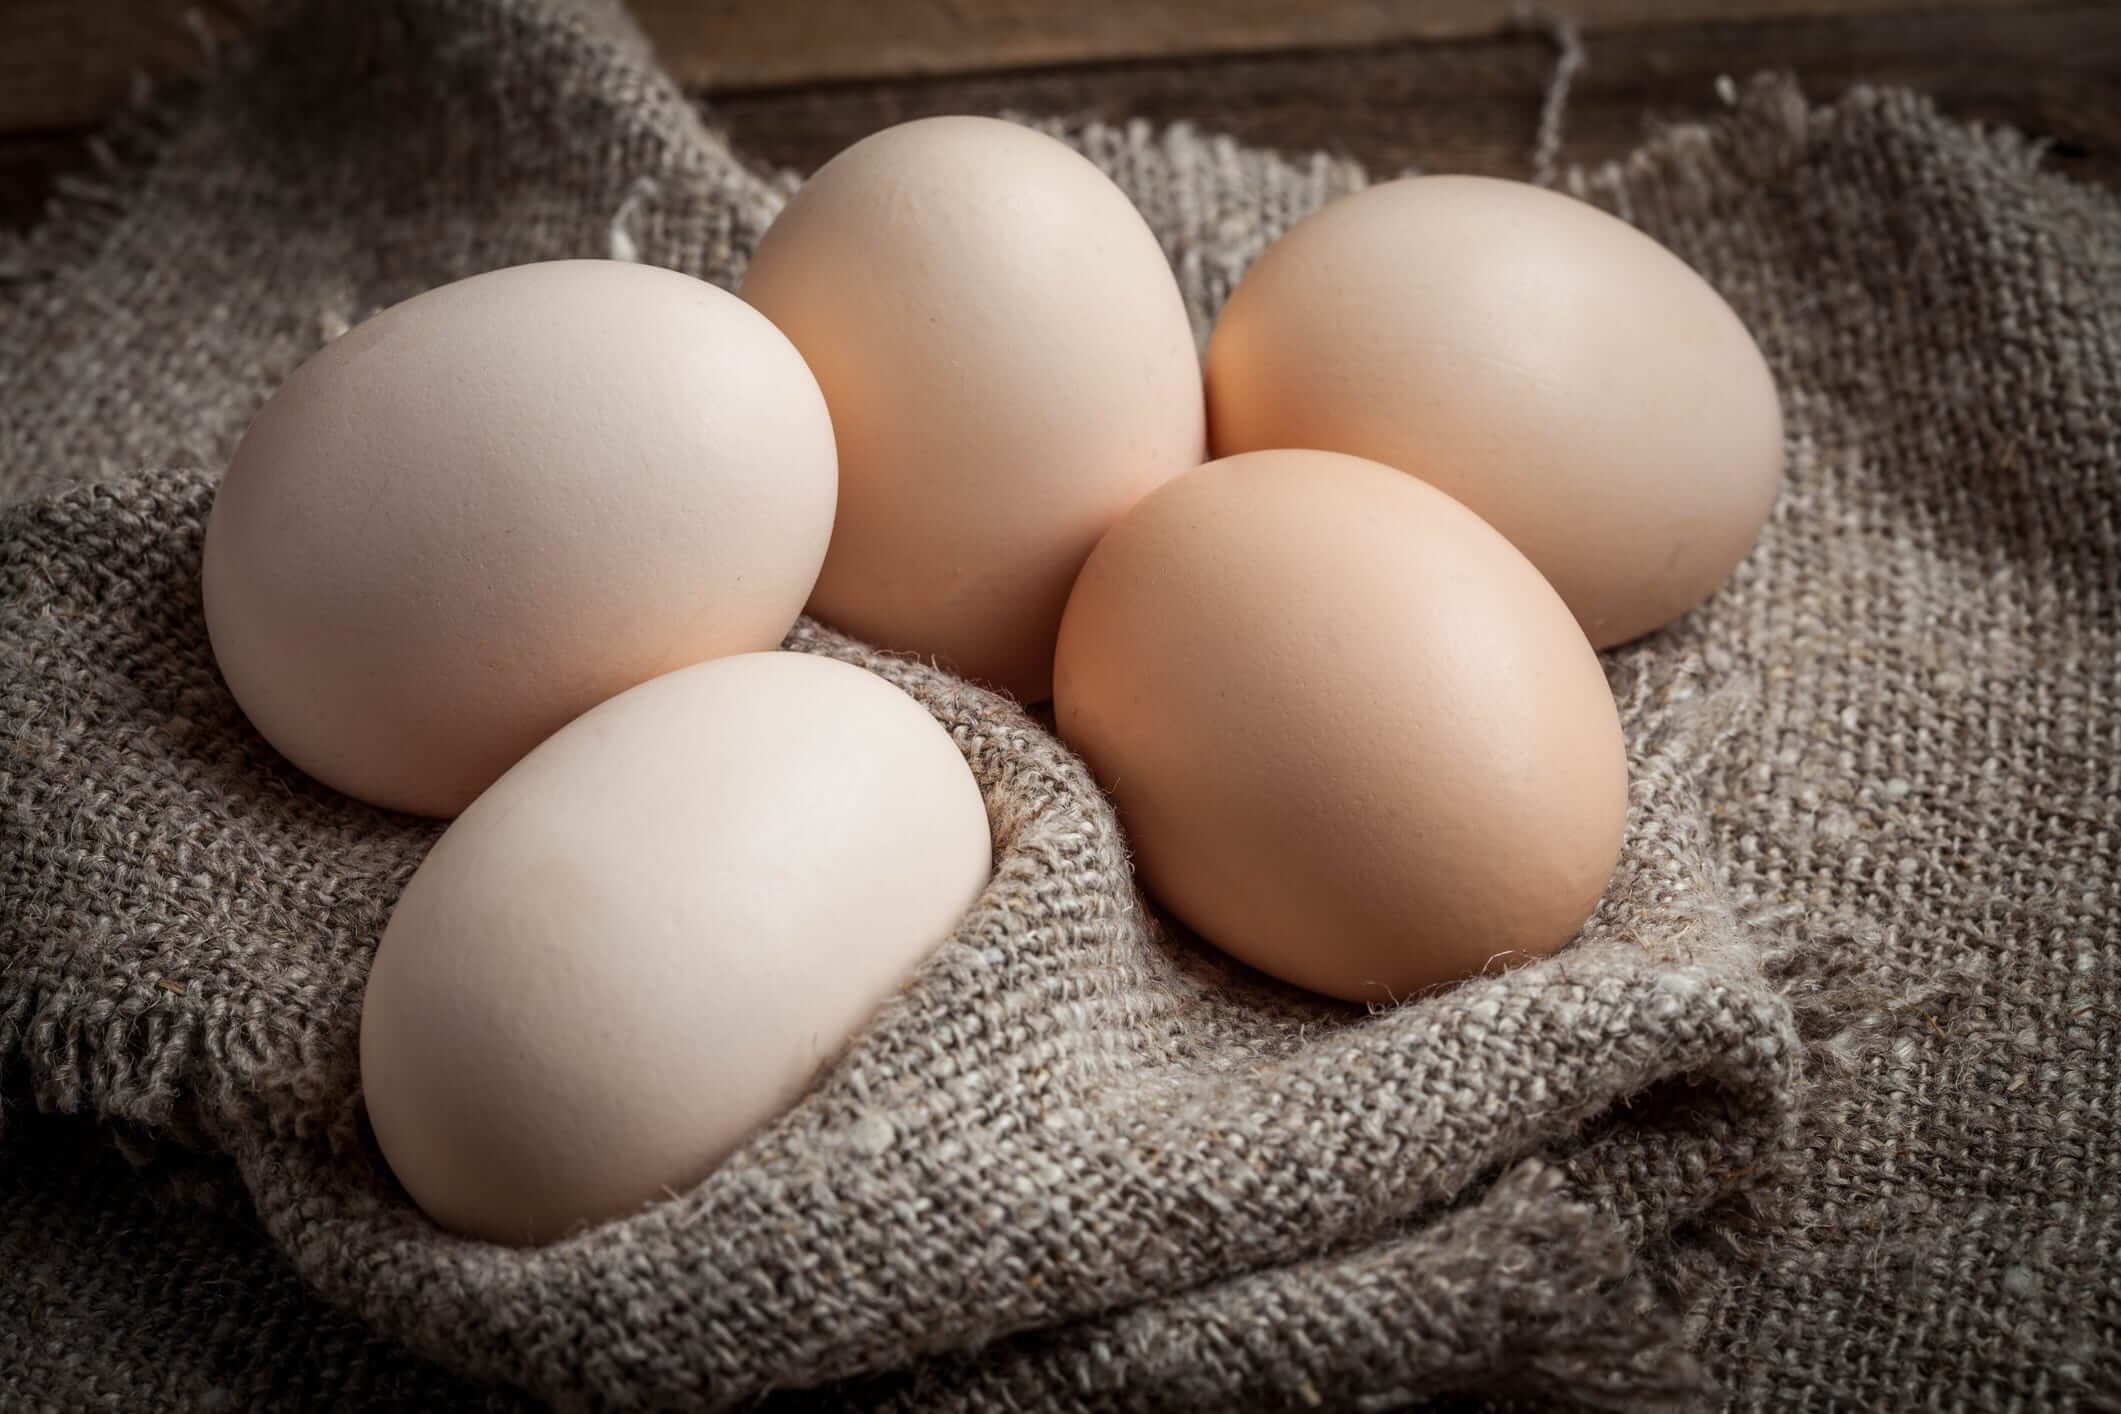 أسعار البيض خلال بداية تعاملات اليوم الاثنين 20 مارس